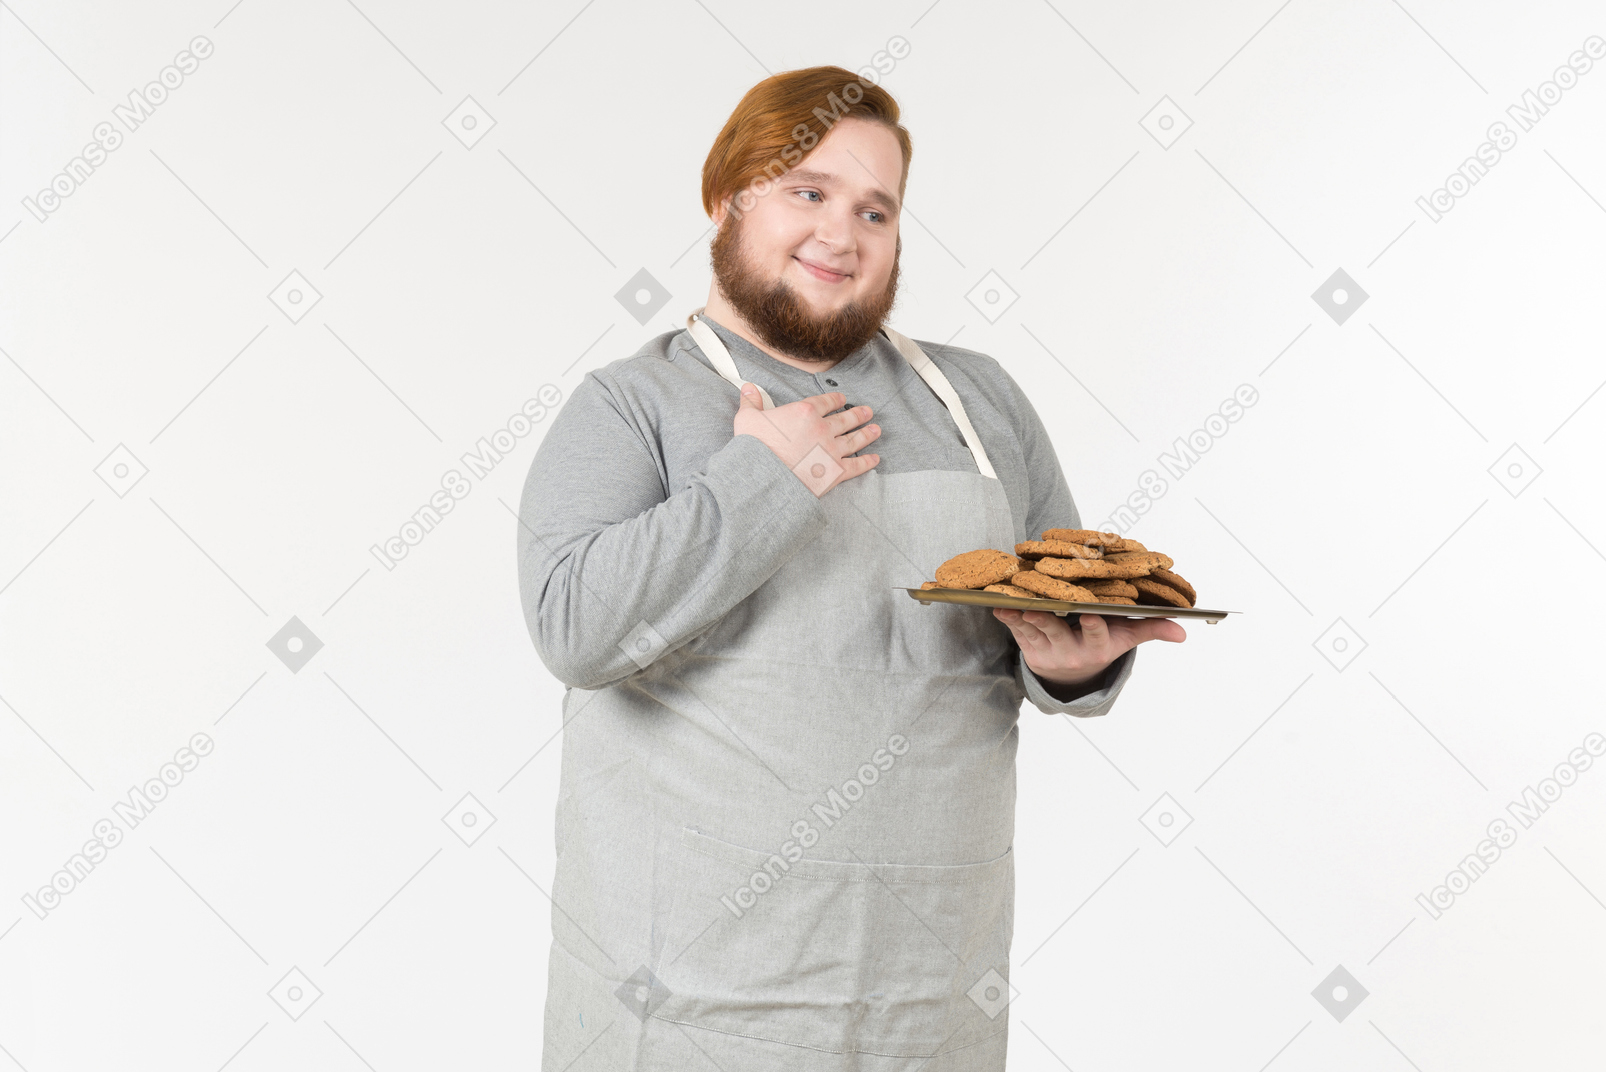 만족해 보이는 쿠키 접시와 함께 뚱뚱한 빵 굽는 사람